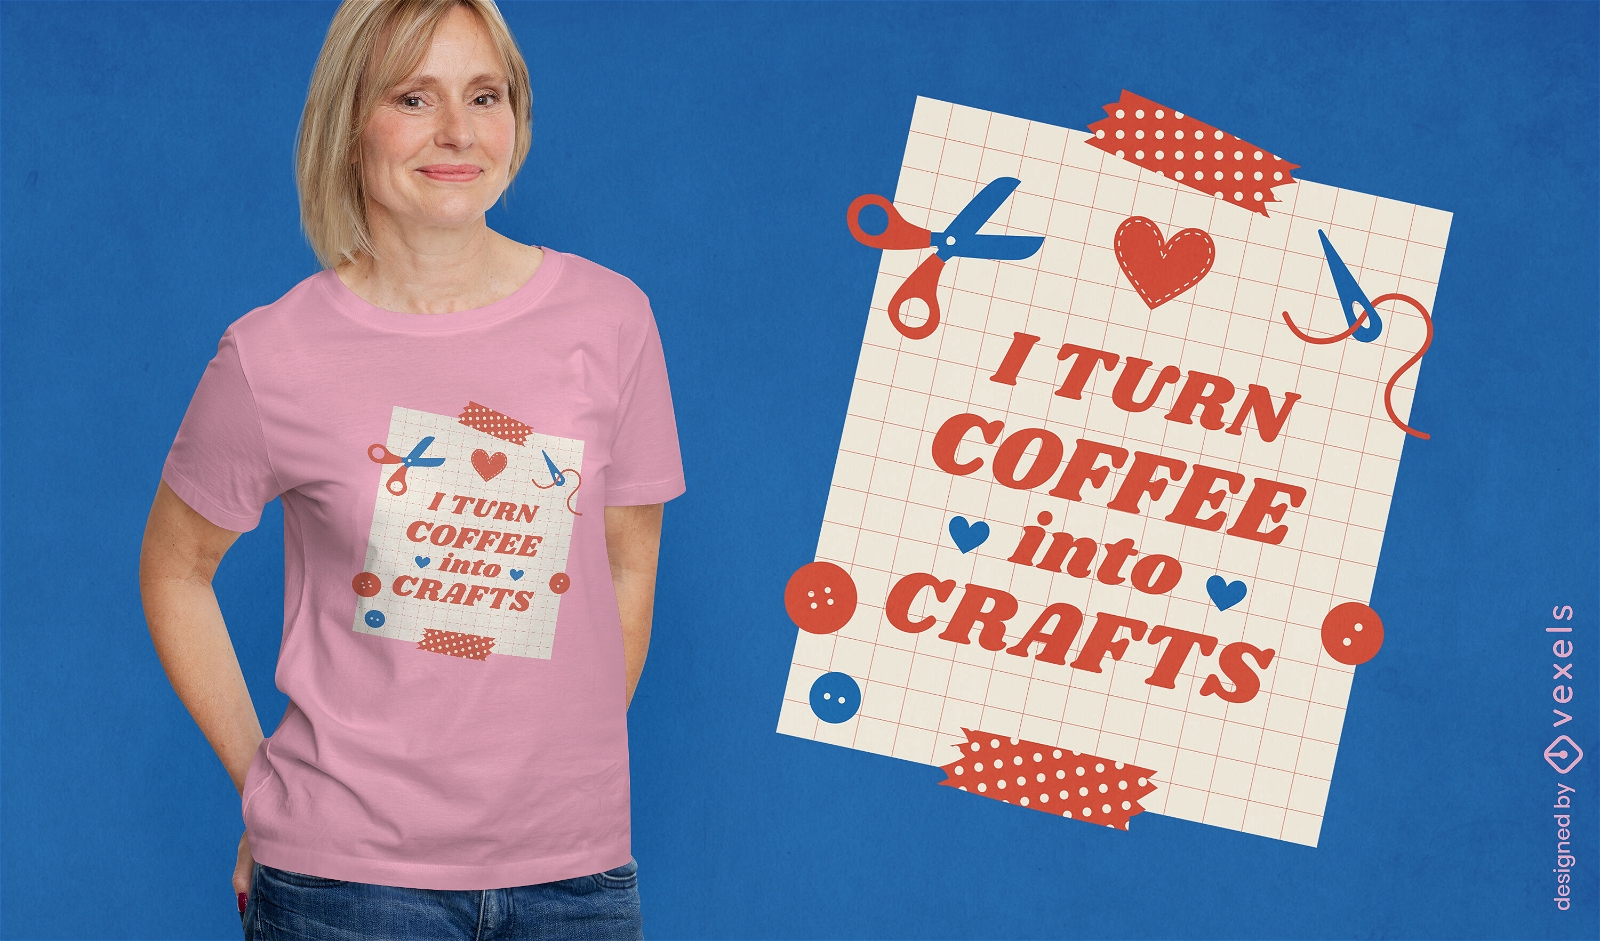 Caf? em design de camiseta de artesanato